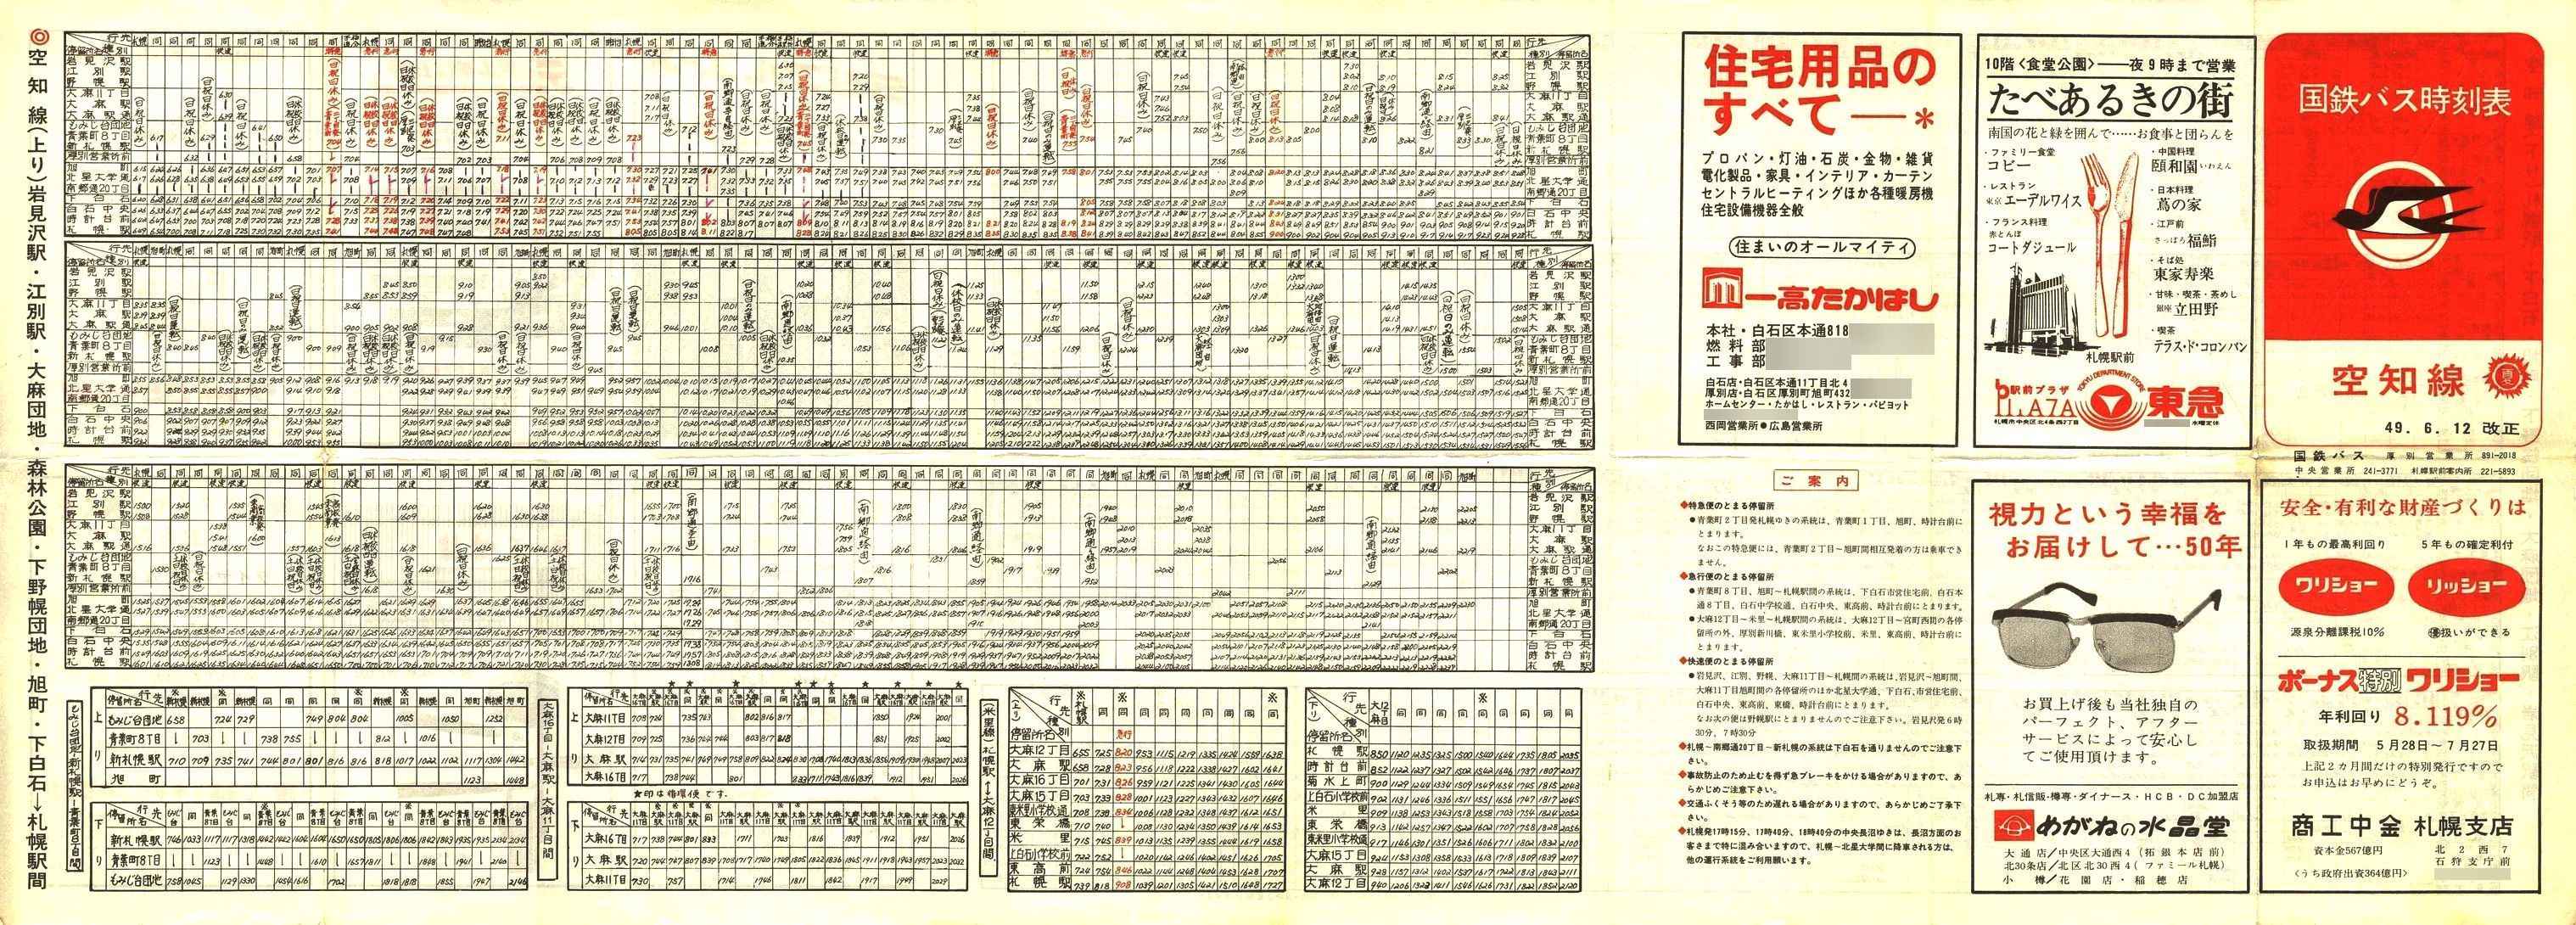 1974-06-12改正_国鉄バス_空知線時刻表表面